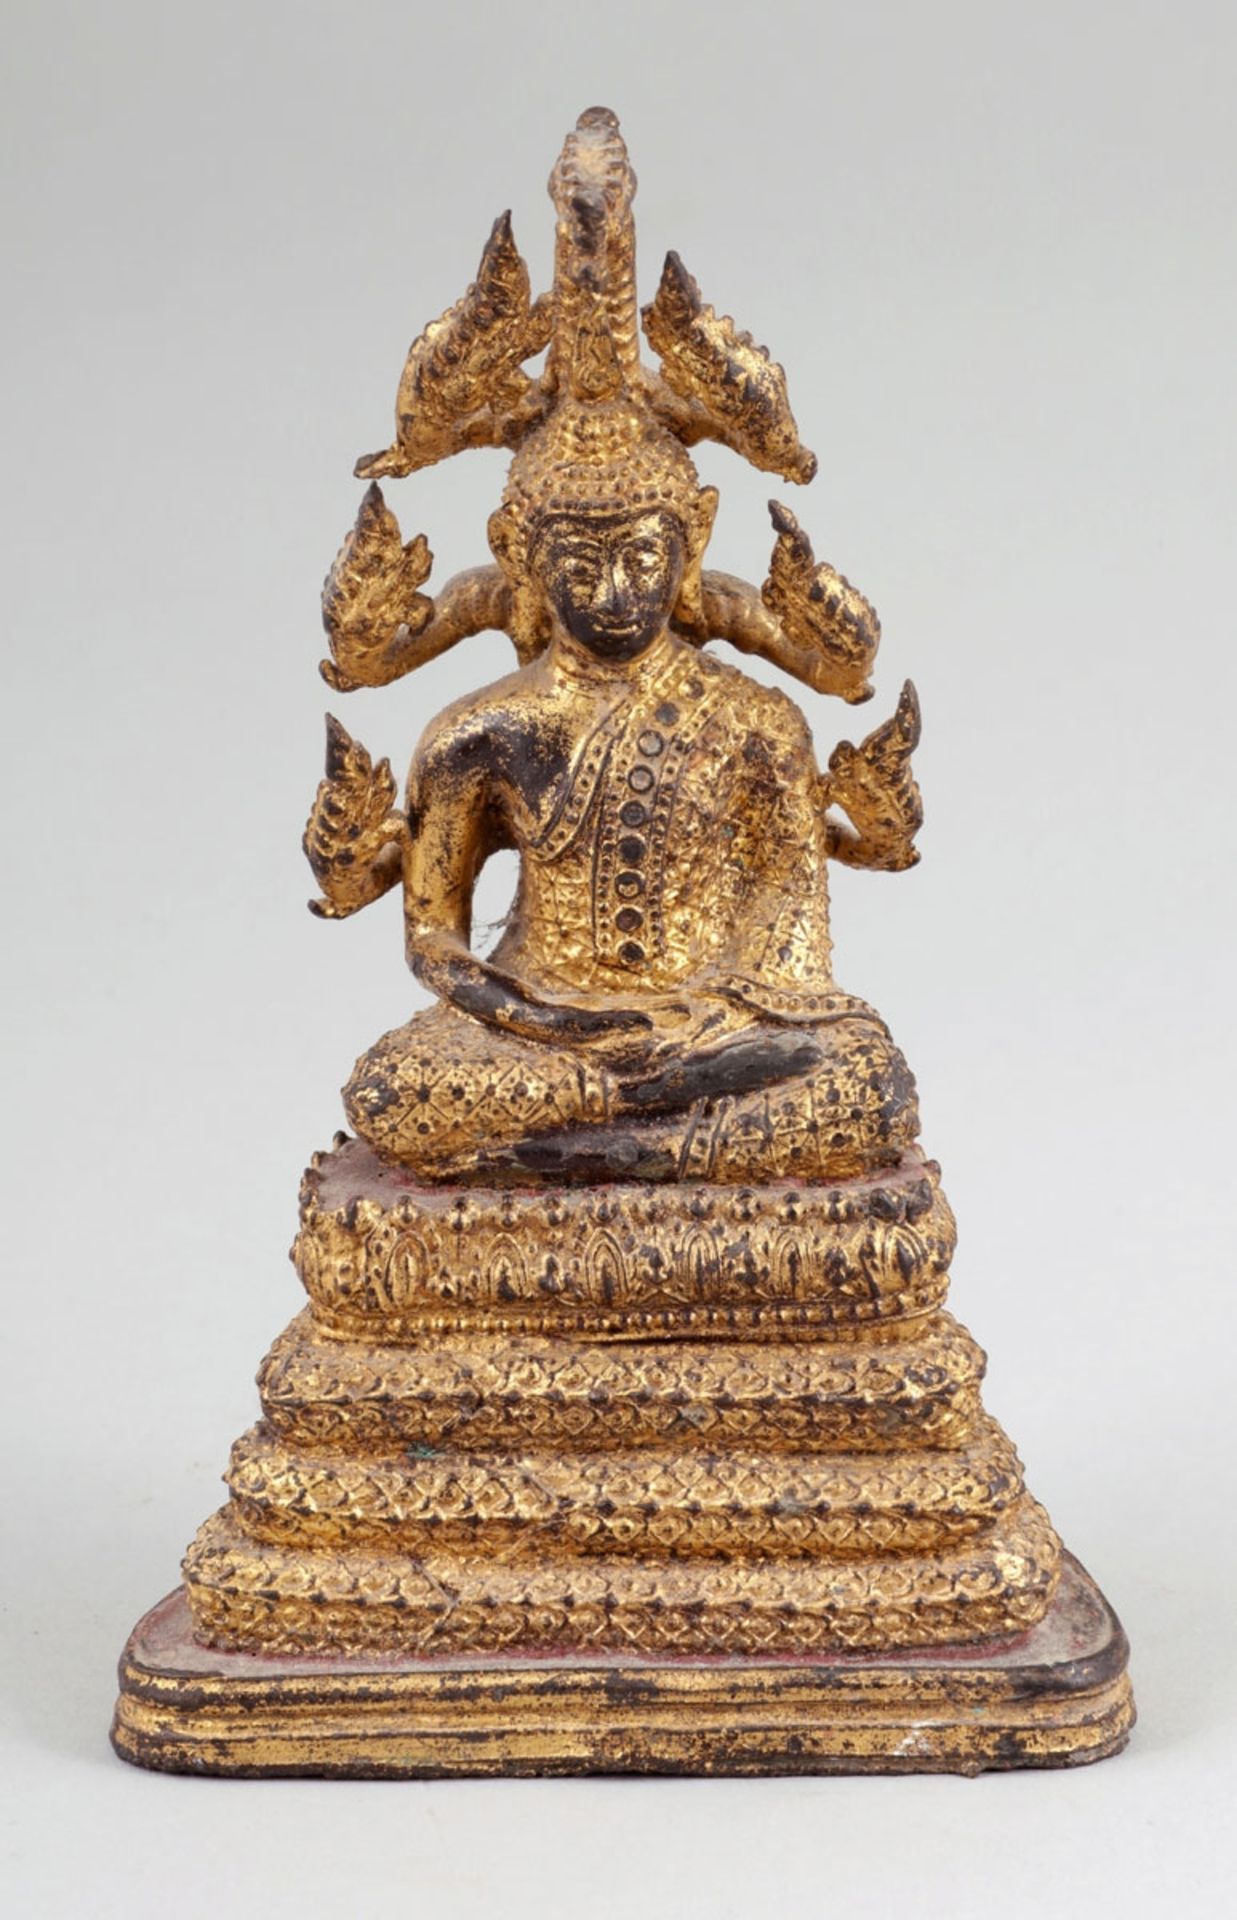 BuddhaThailand, Bangkok Periode. - "Muchalinda " - Bronze. Vergoldet. H. 16 cm. Sitzender Buddha auf